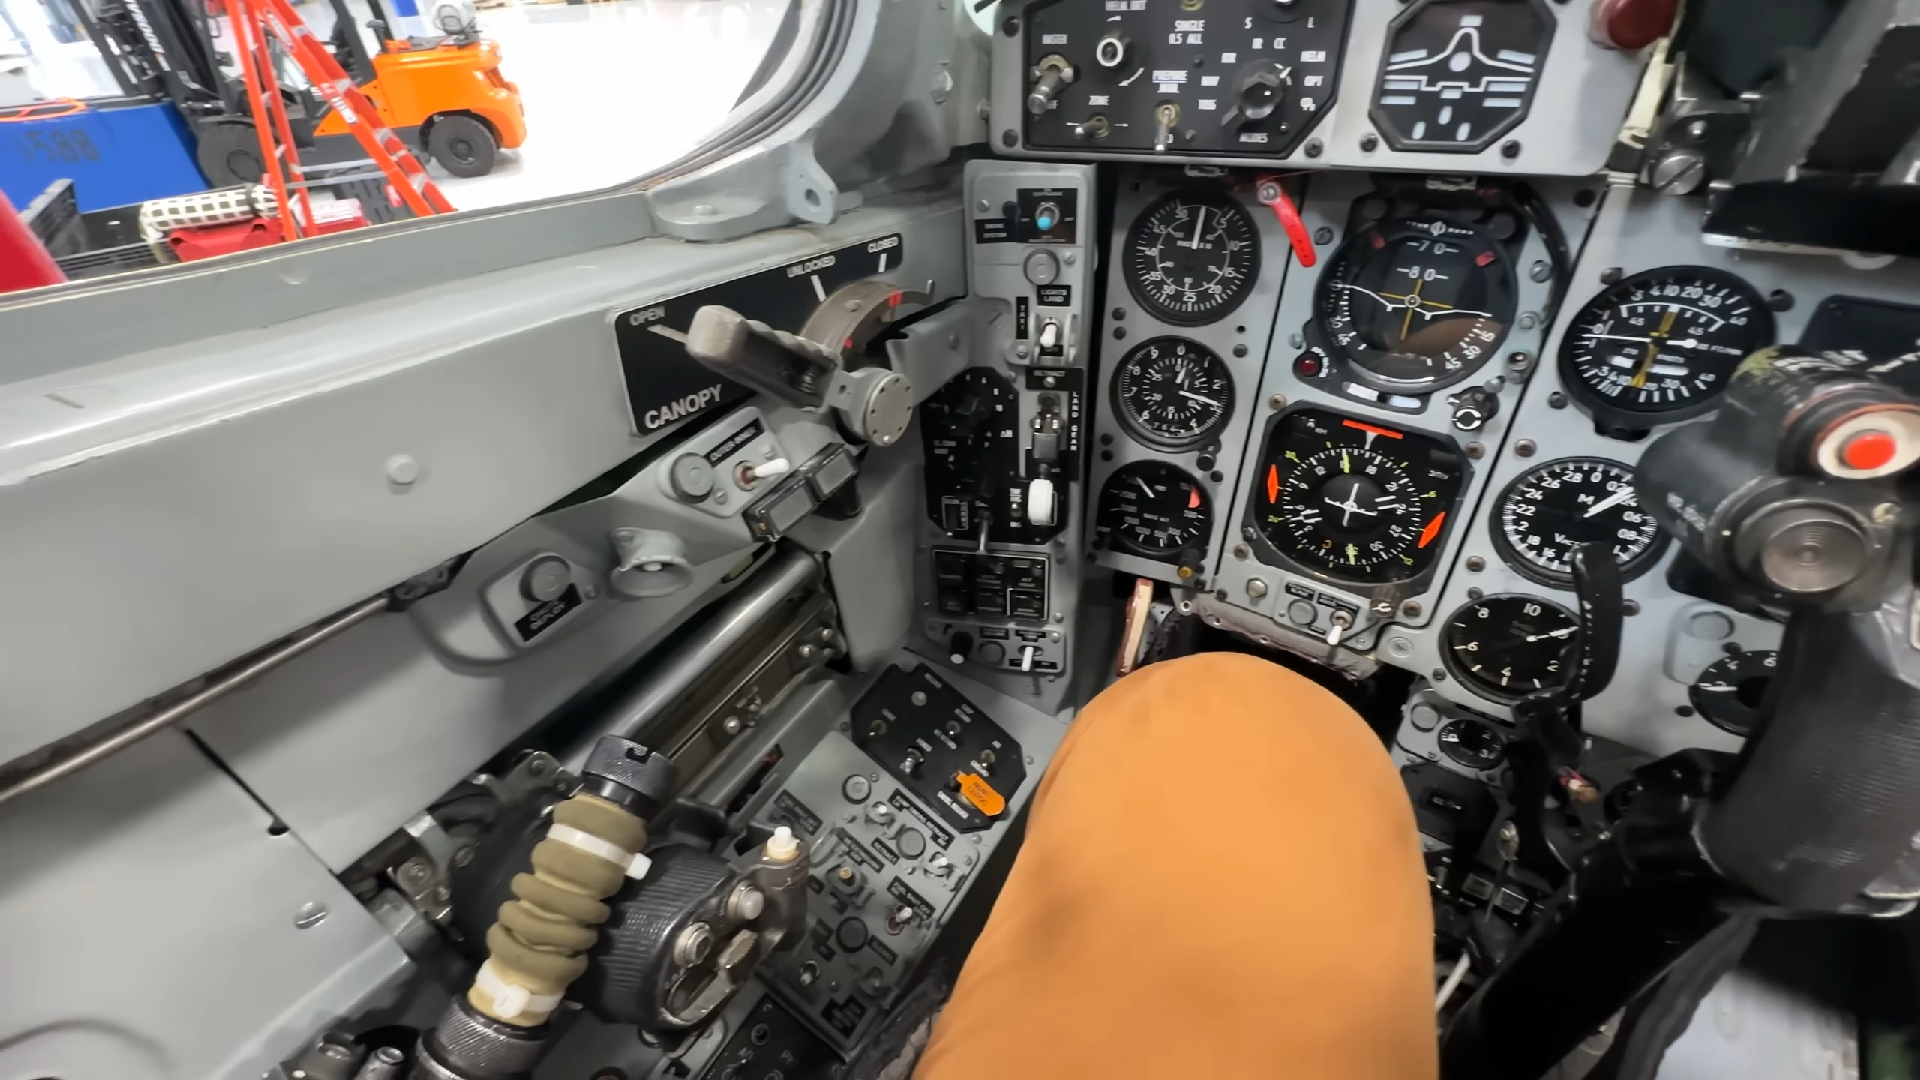 米格MiG29静态高清展示感受毛熊的机械美感